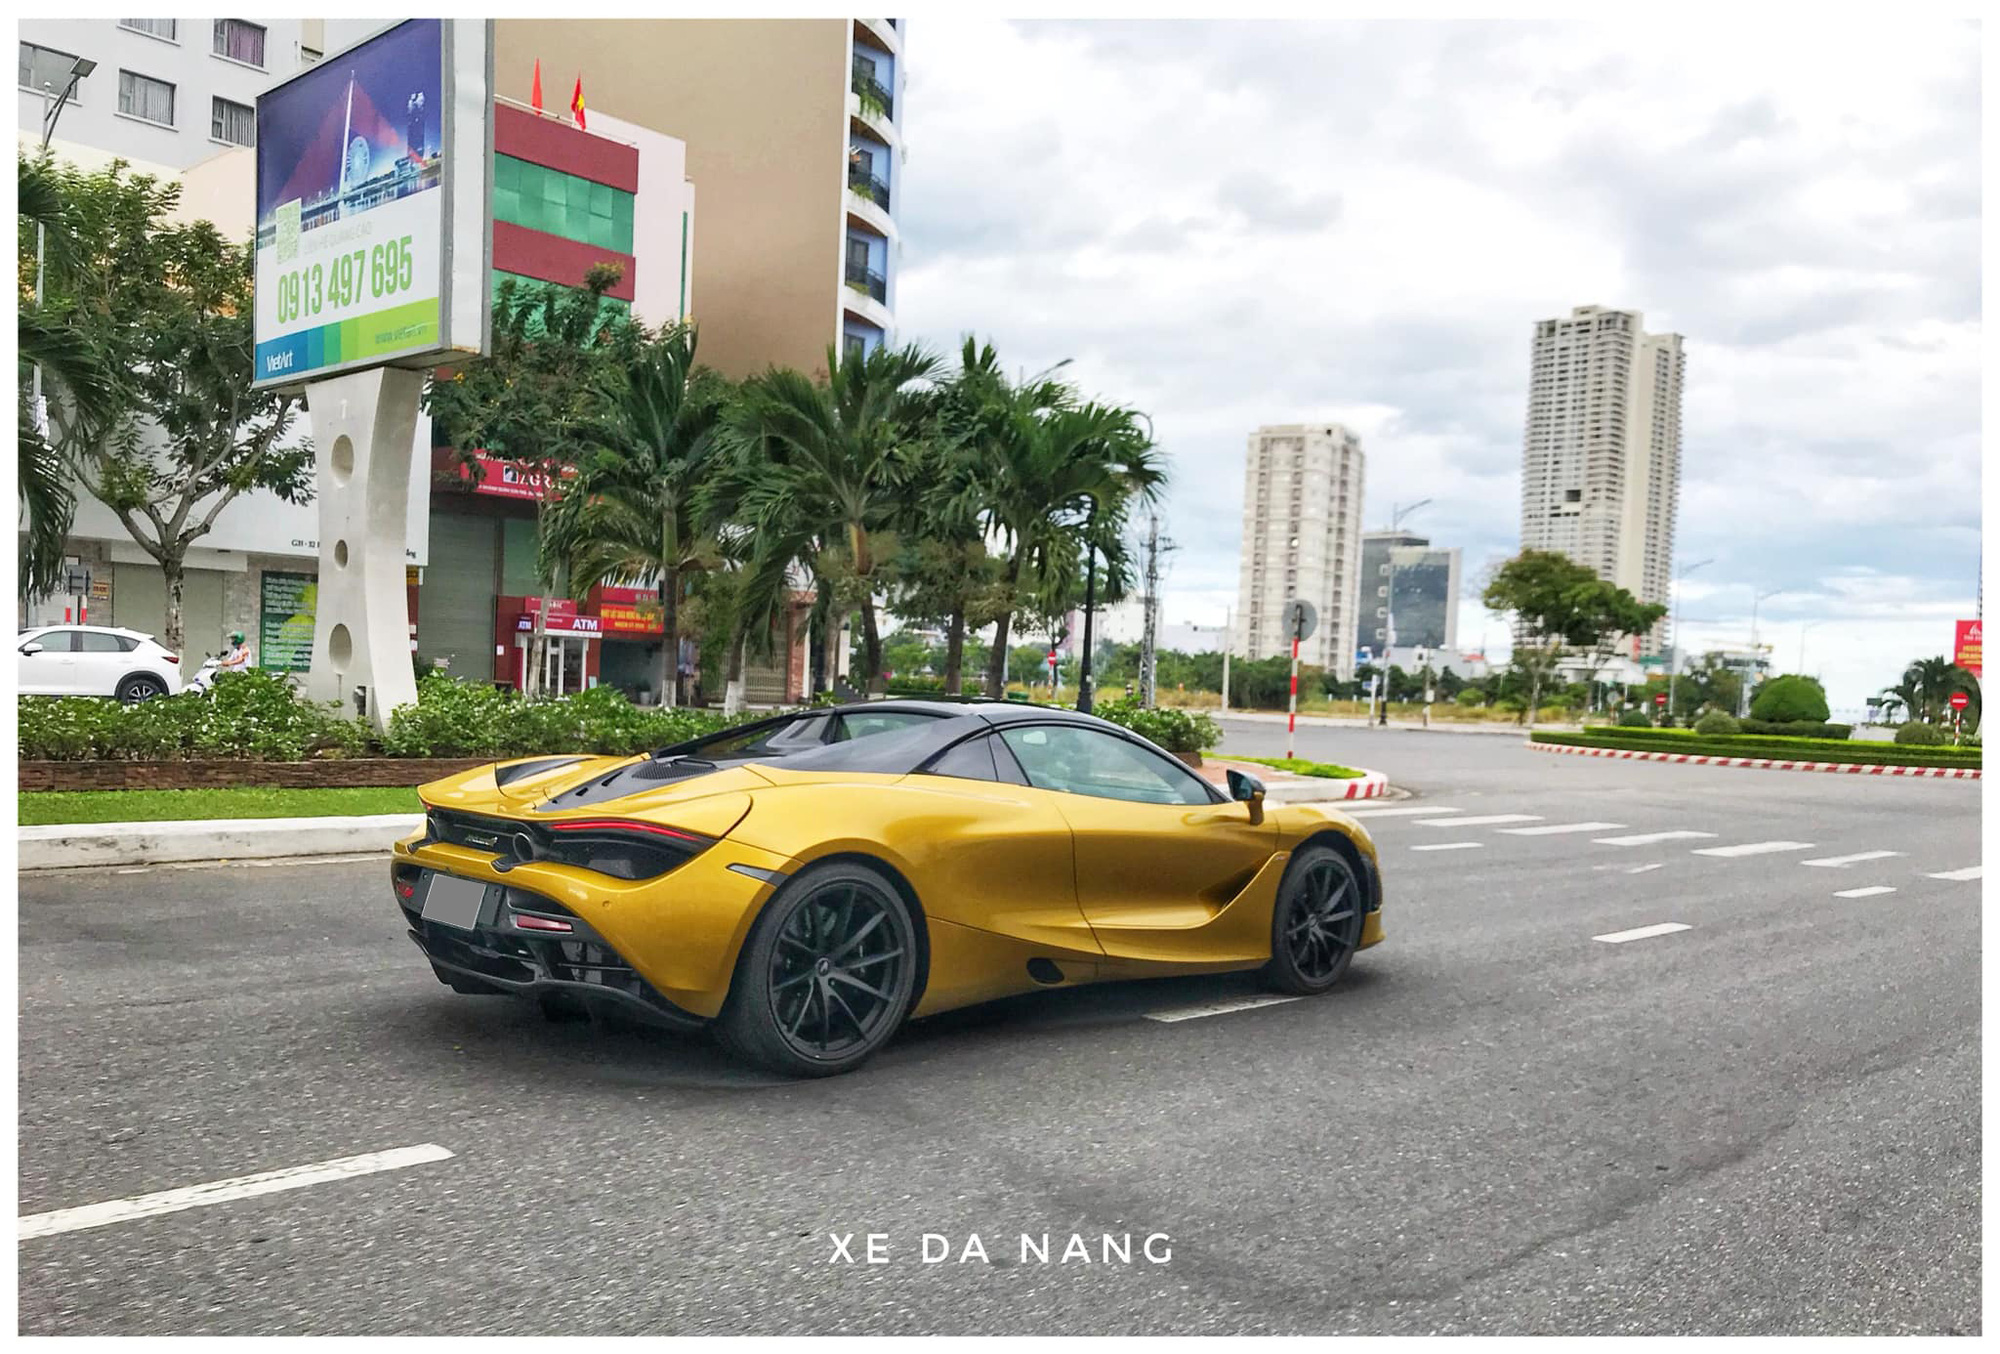 Siêu xe McLaren 720S Spider màu vàng đồng lăn bánh trên đường phố Đà Nẵng - Ảnh 1.